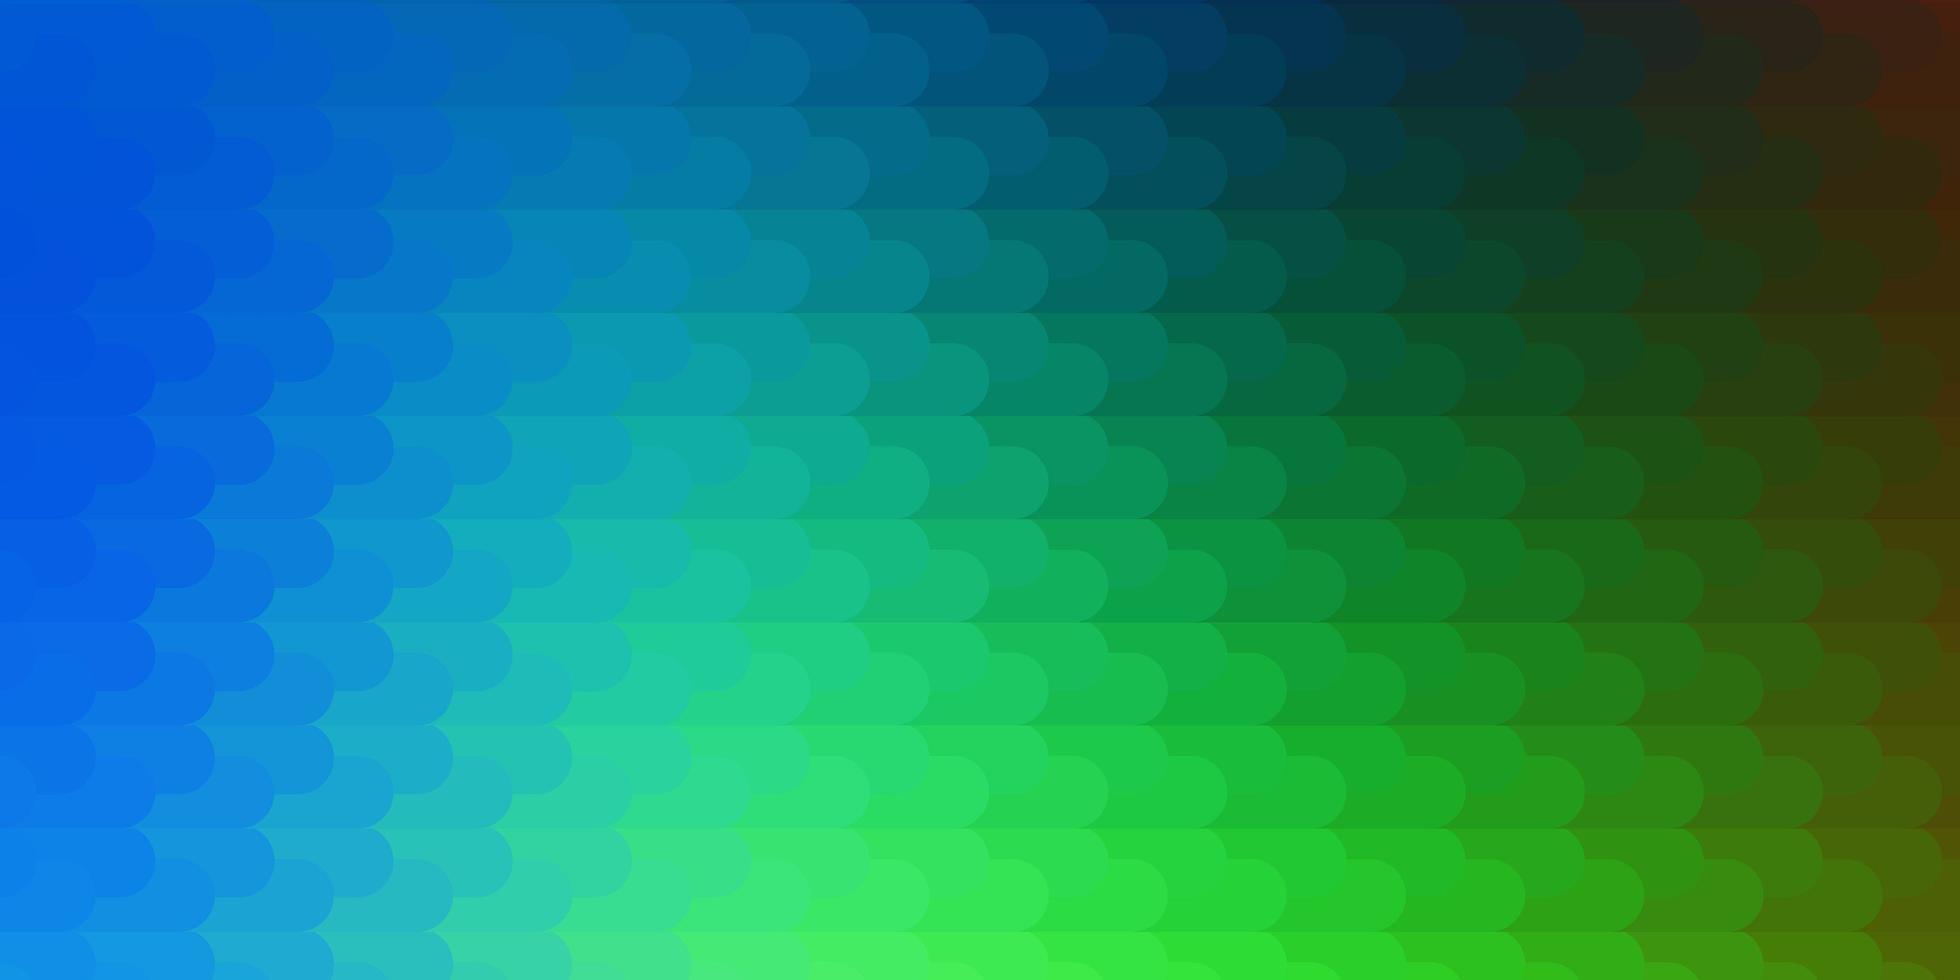 textura de vetor azul e verde claro com linhas.